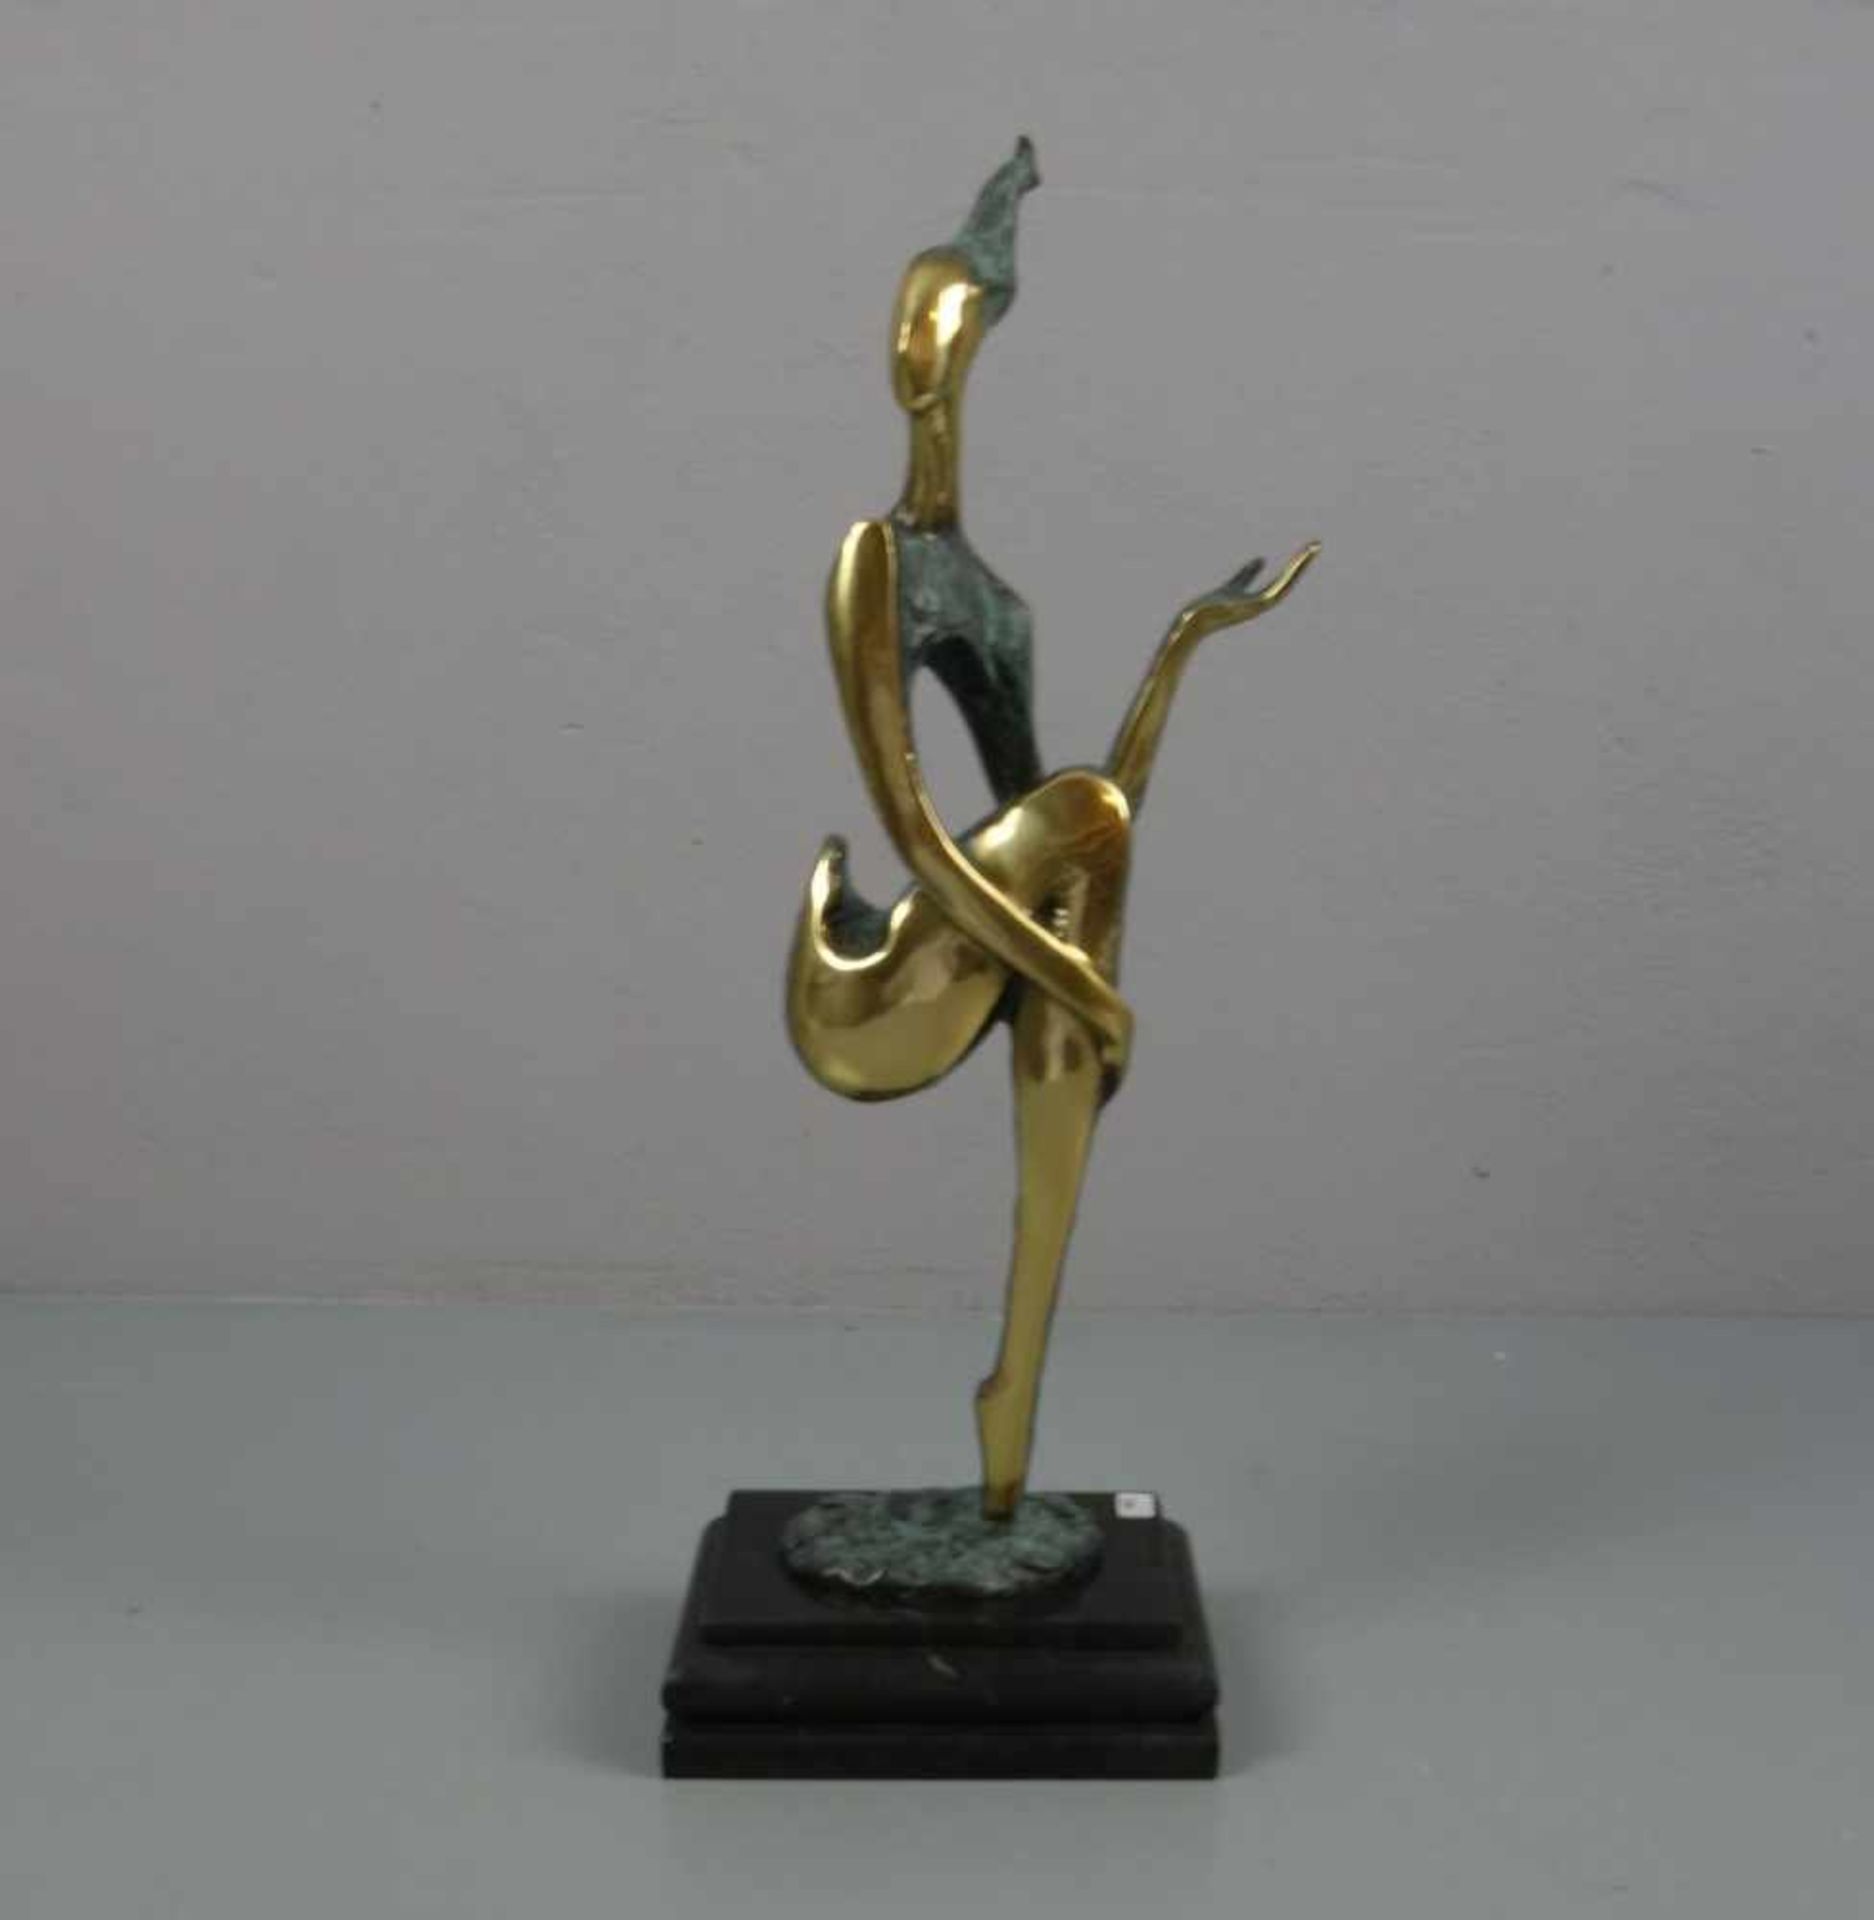 NICK (Bildhauer des 20./21. Jh.), Skulptur / sculpture: "Sitzende", Bronze, goldfarben poliert und